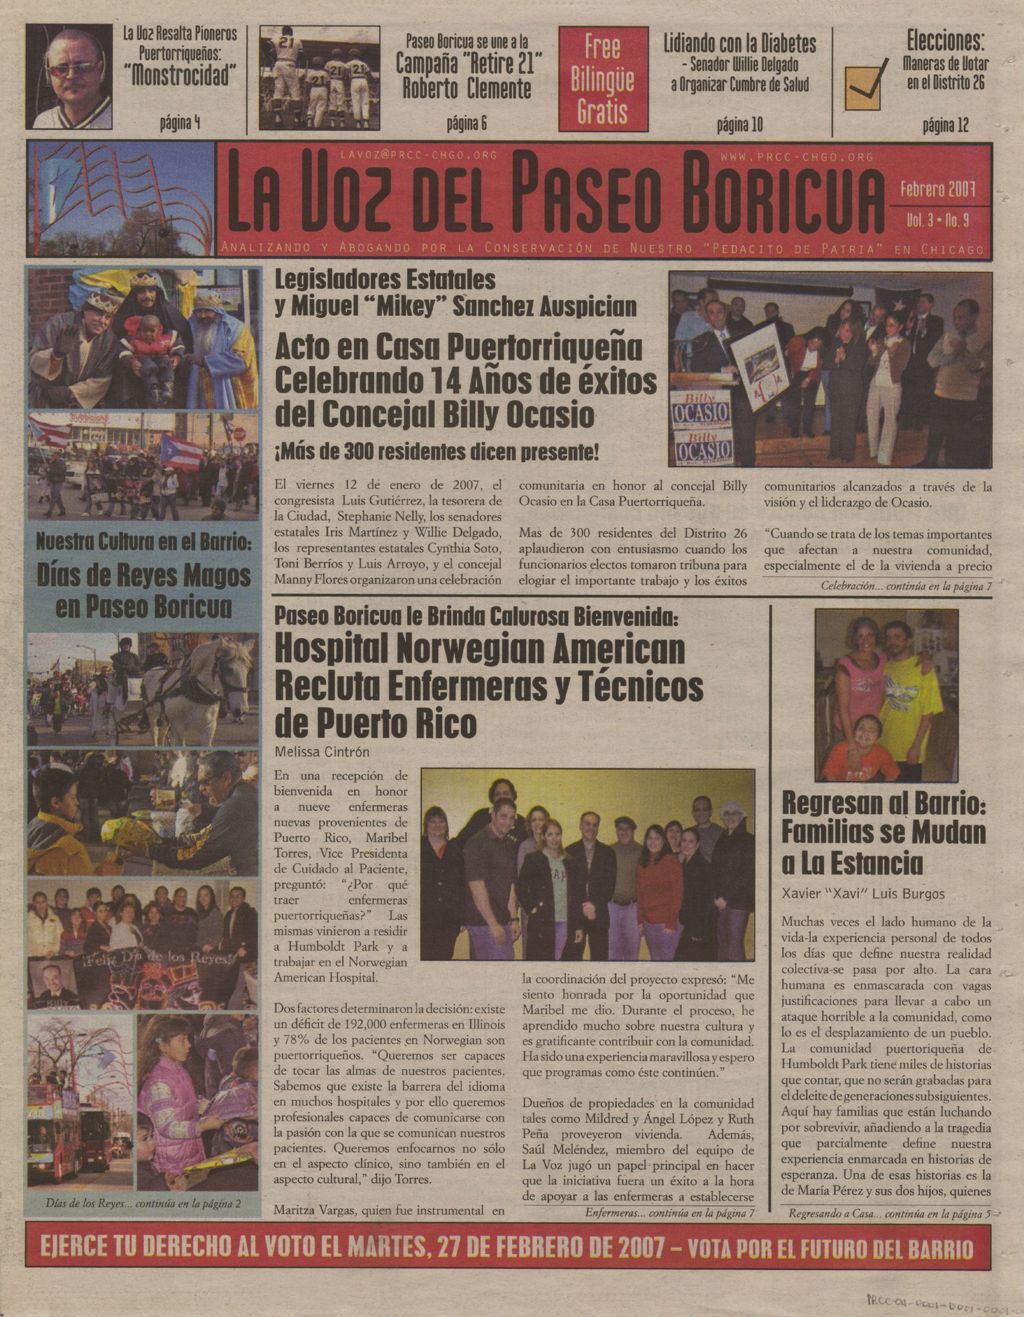 Miniature of La Voz del Paseo Boricua; Febrero 2007; vol. 3, no. 9 (Spanish and English covers)